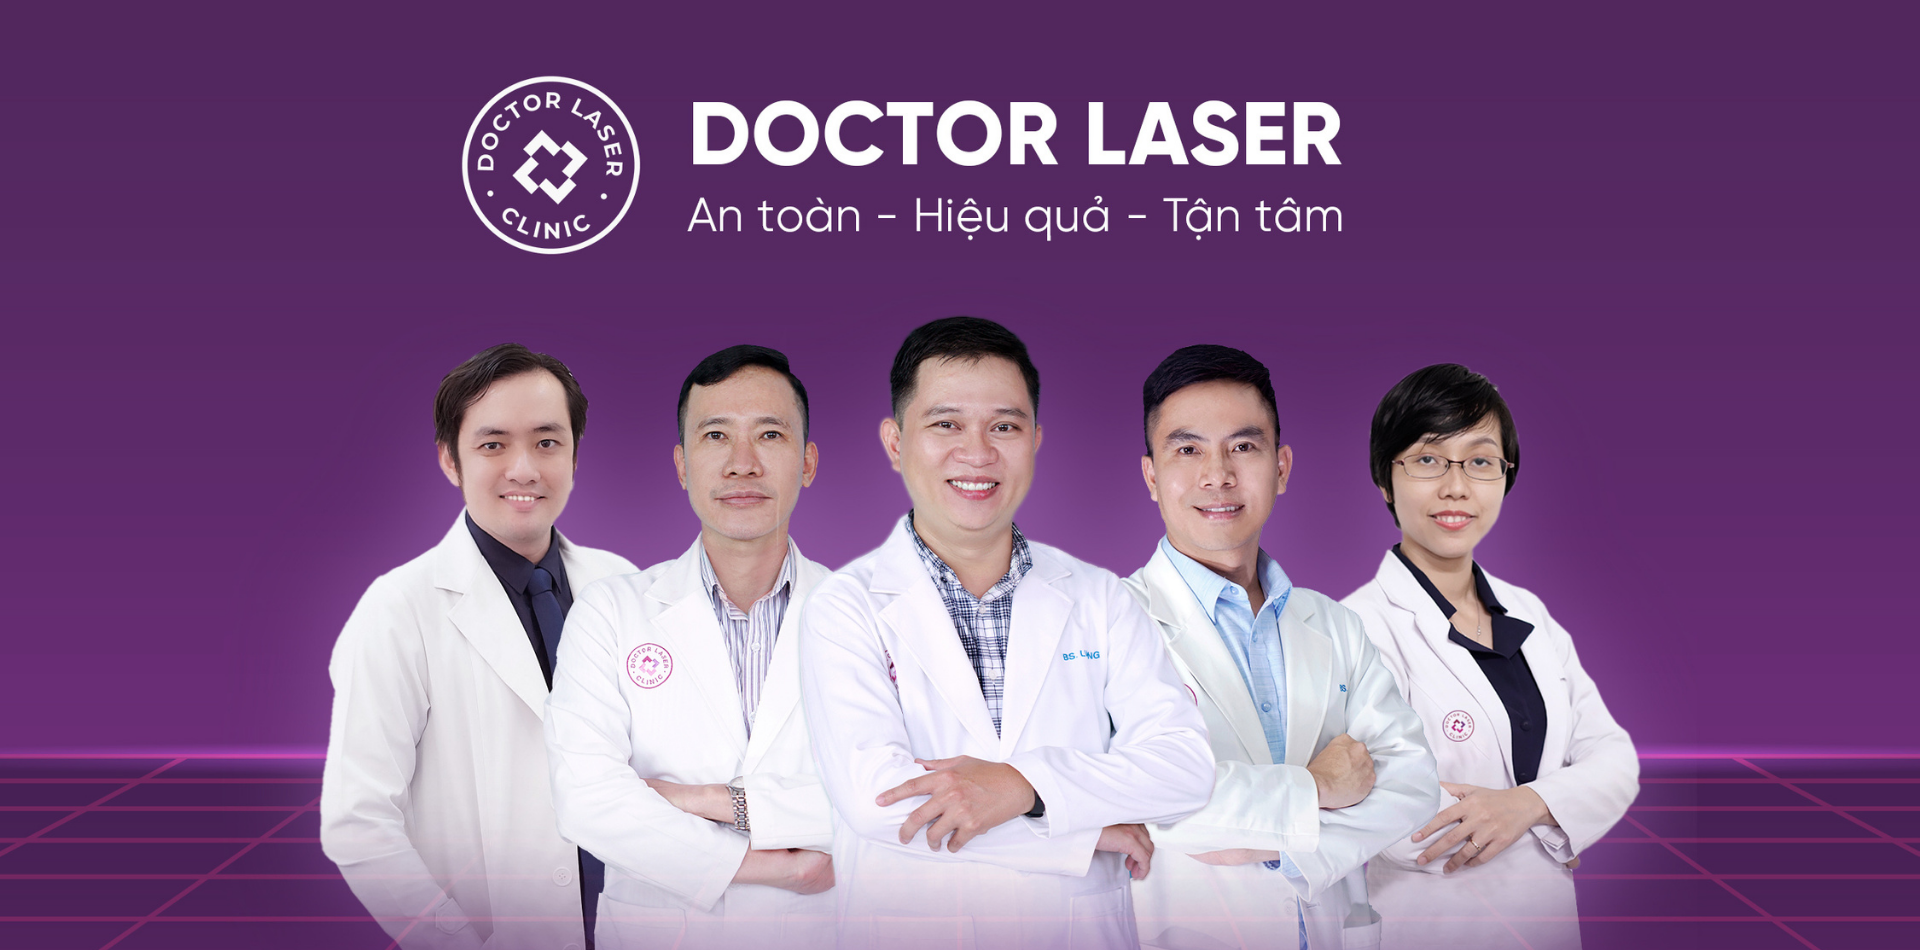 Đội ngũ bác sĩ giàu kinh nghiệm tại Doctor Laser